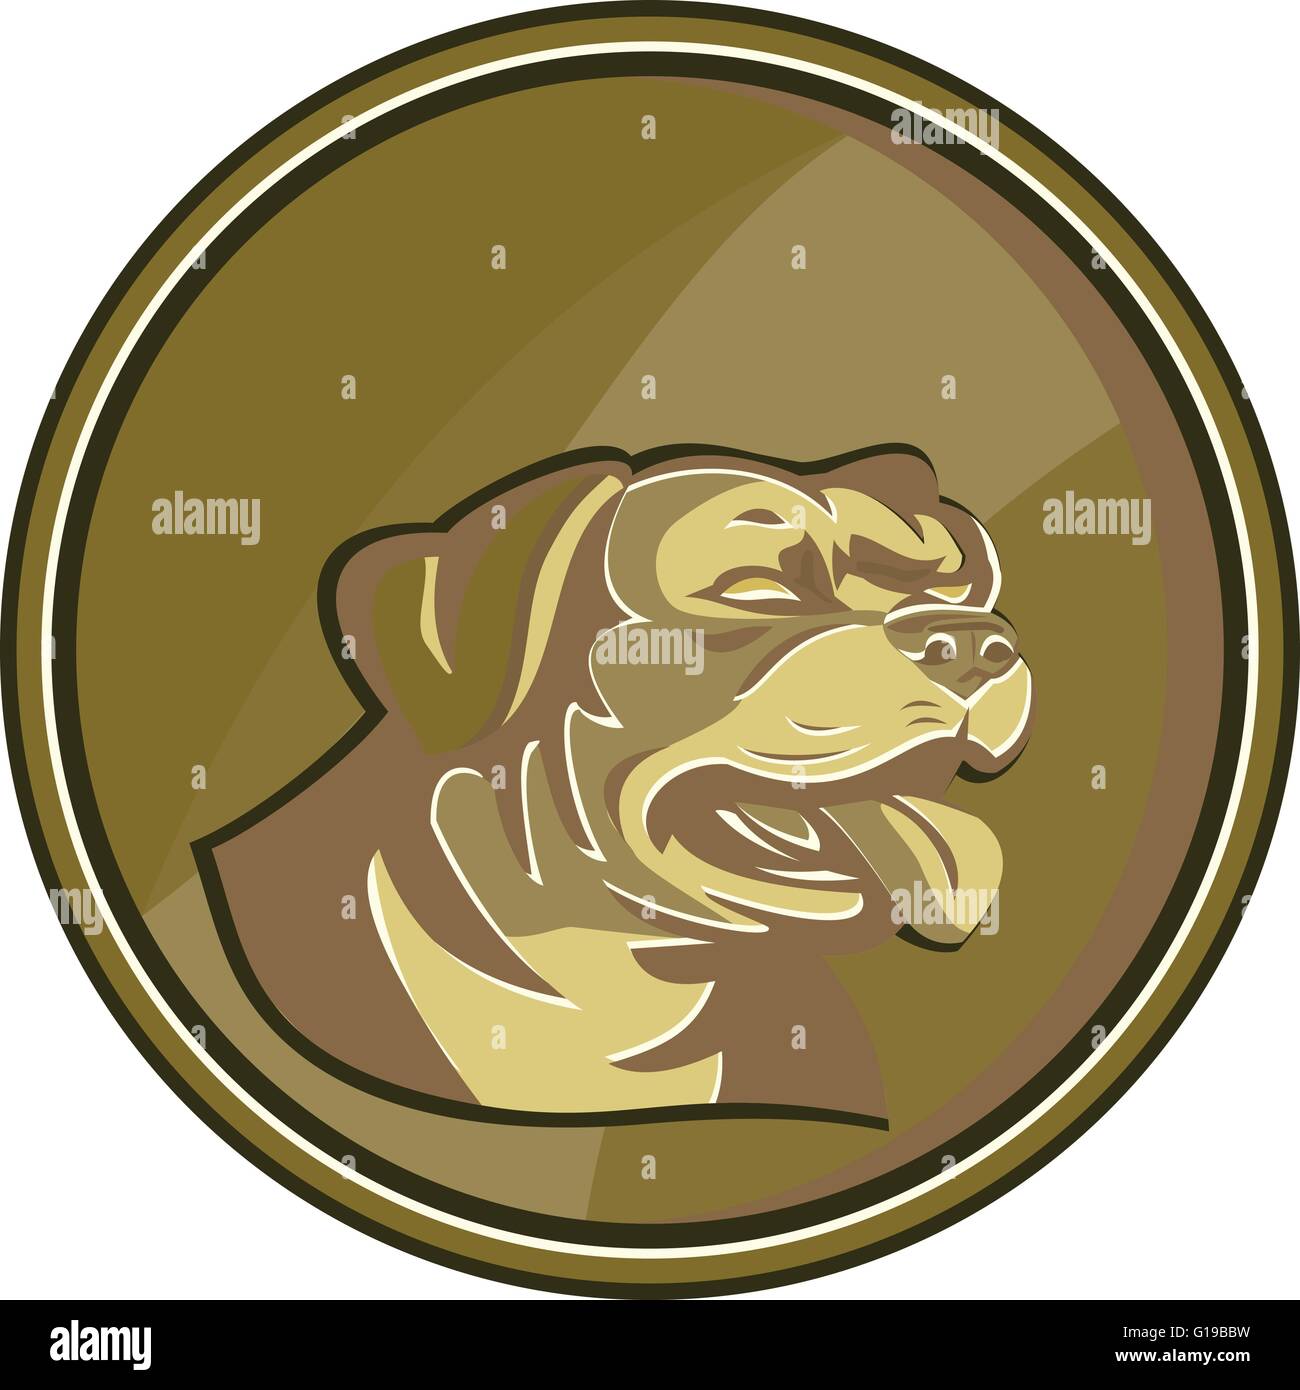 Illustrazione di un rottweiler Metzgerhund mastiff-cane cane da guardia capo visto dal lato impostato all'interno del cerchio Gold Medallion fatto in stile retrò. Illustrazione Vettoriale